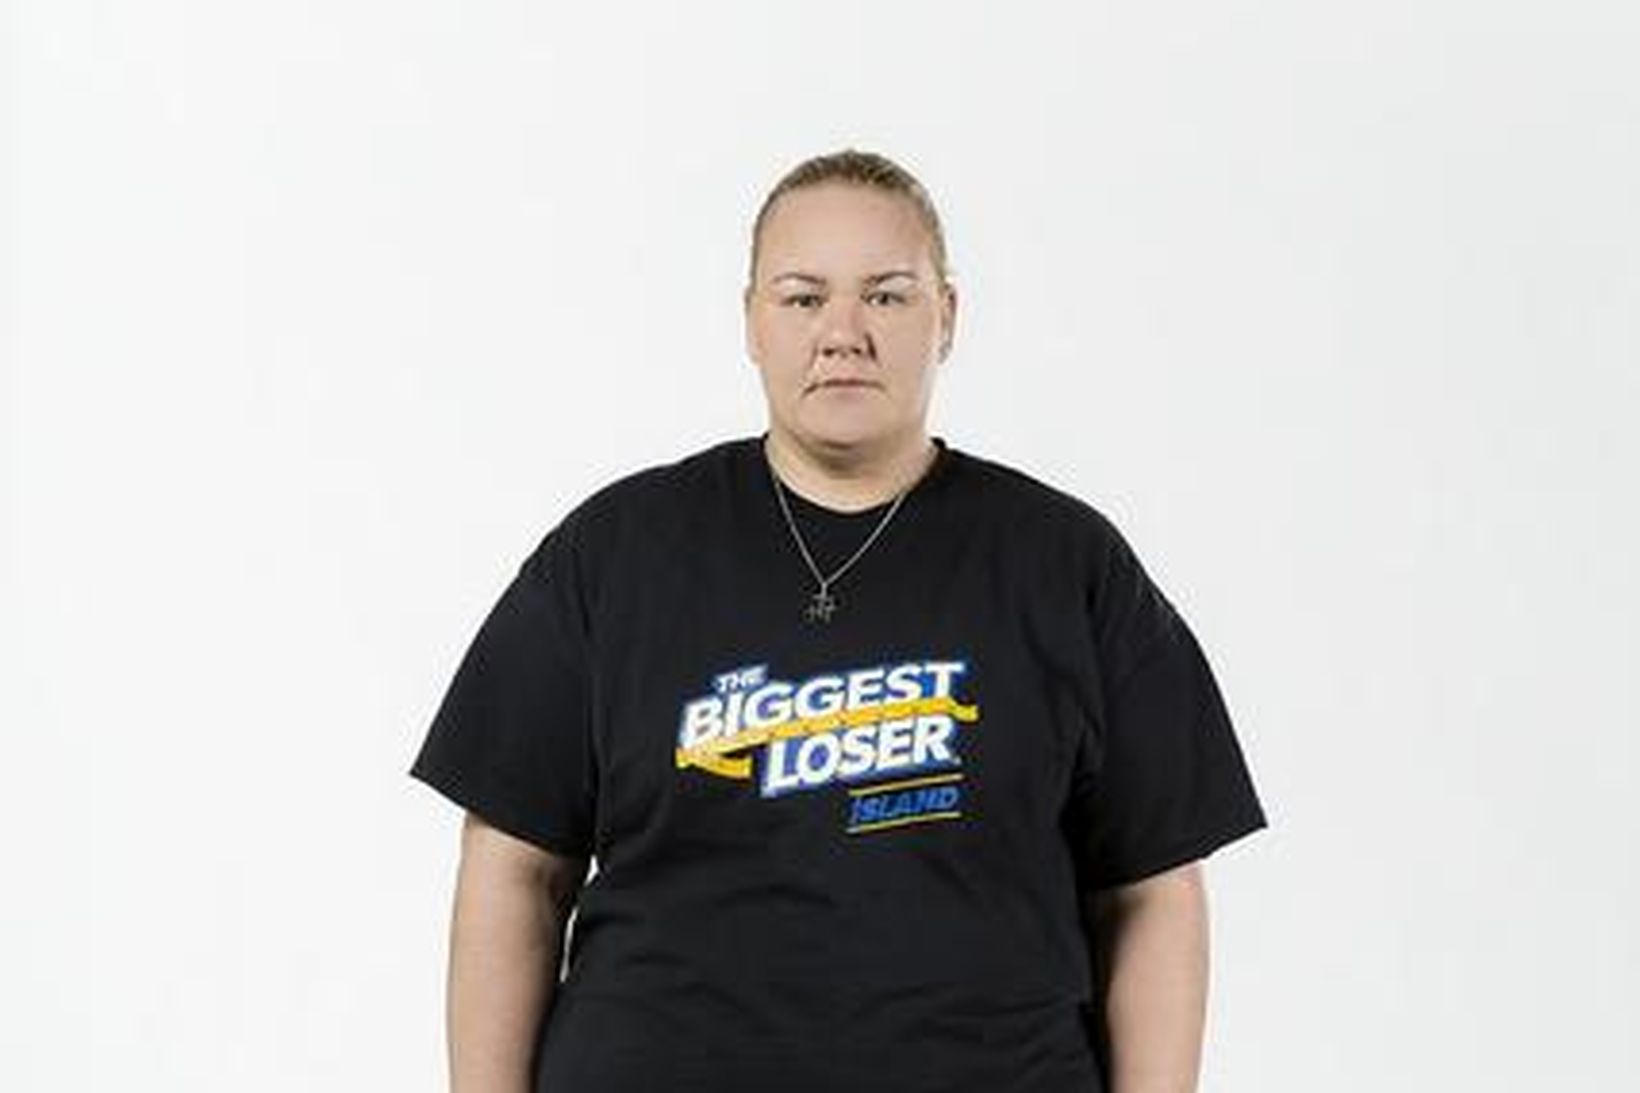 Margrét Andrésdóttir tekur þátt í Biggest Loser.